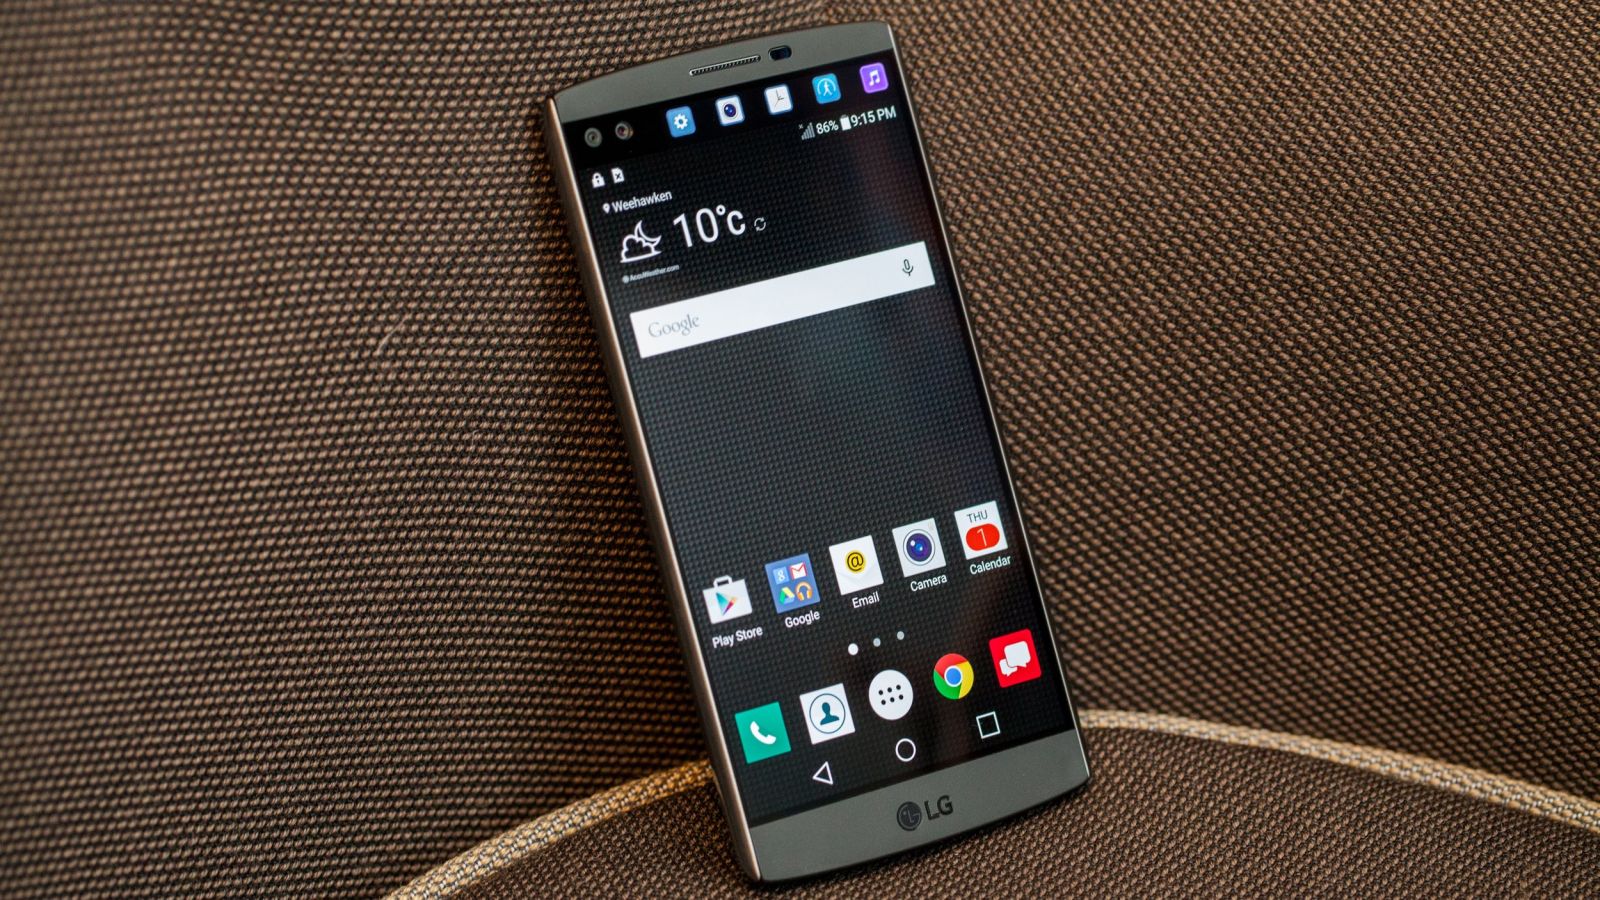 Mua A7 phiên bản 2016 hay LG V10 cũ phân khúc chưa đến 7 triệu đồng